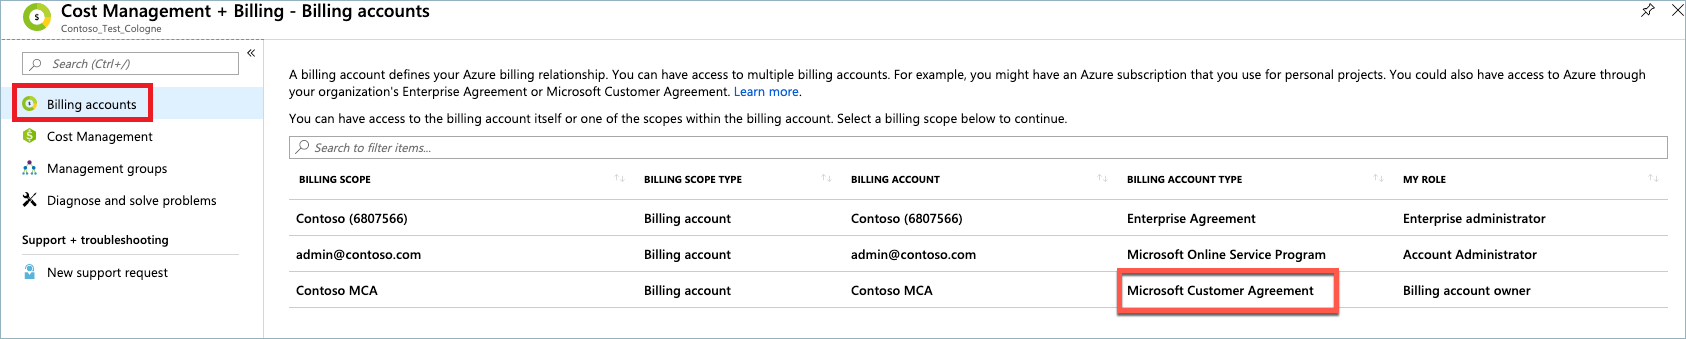 Faturalama Hesapları sayfasındaki Microsoft Müşteri Sözleşmesi türünü gösteren ekran görüntüsü.